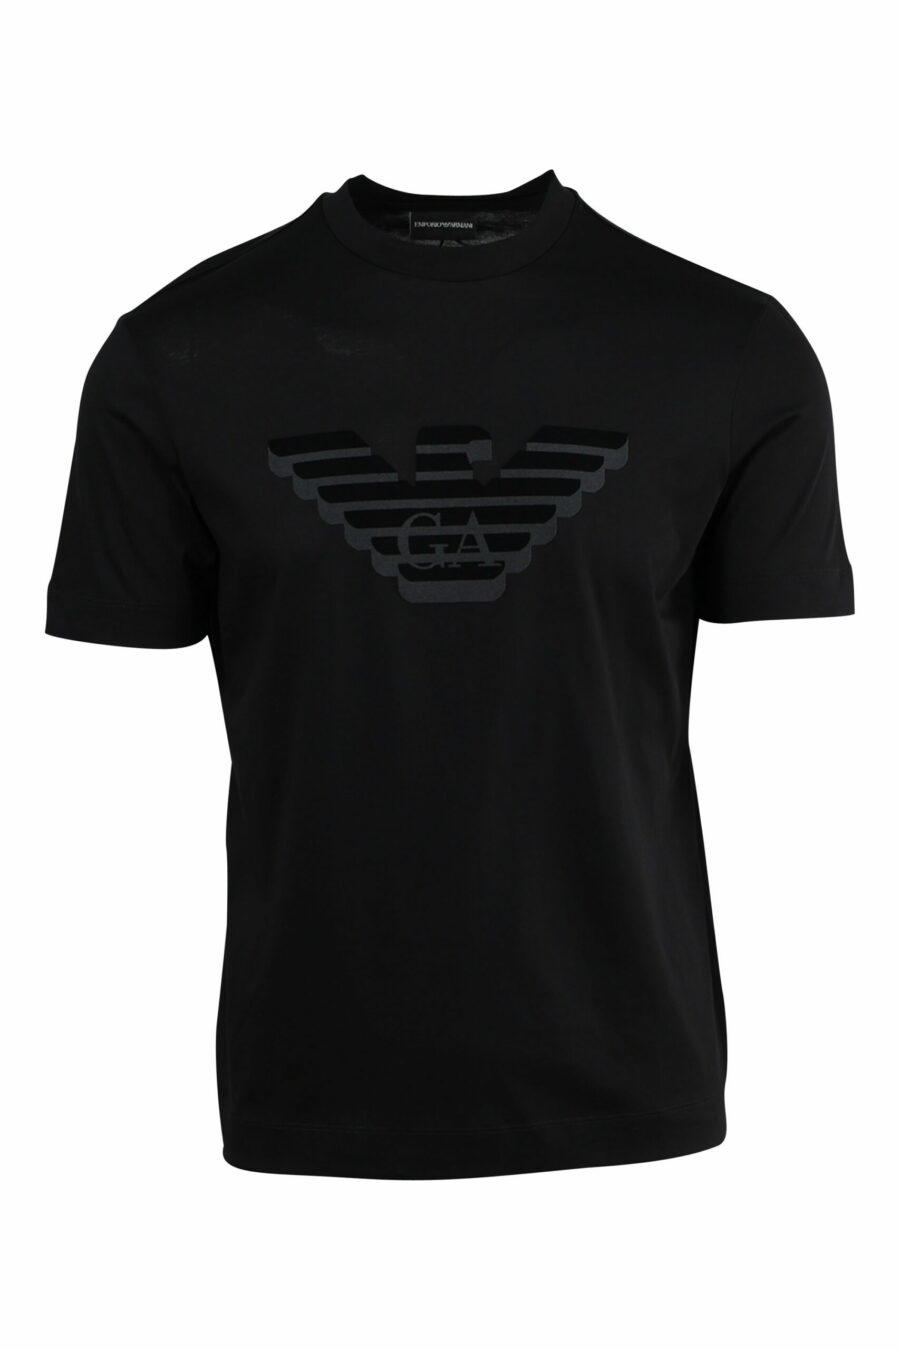 Schwarzes T-Shirt mit geprägtem Adler-Maxilogo - 8057970433729 skaliert